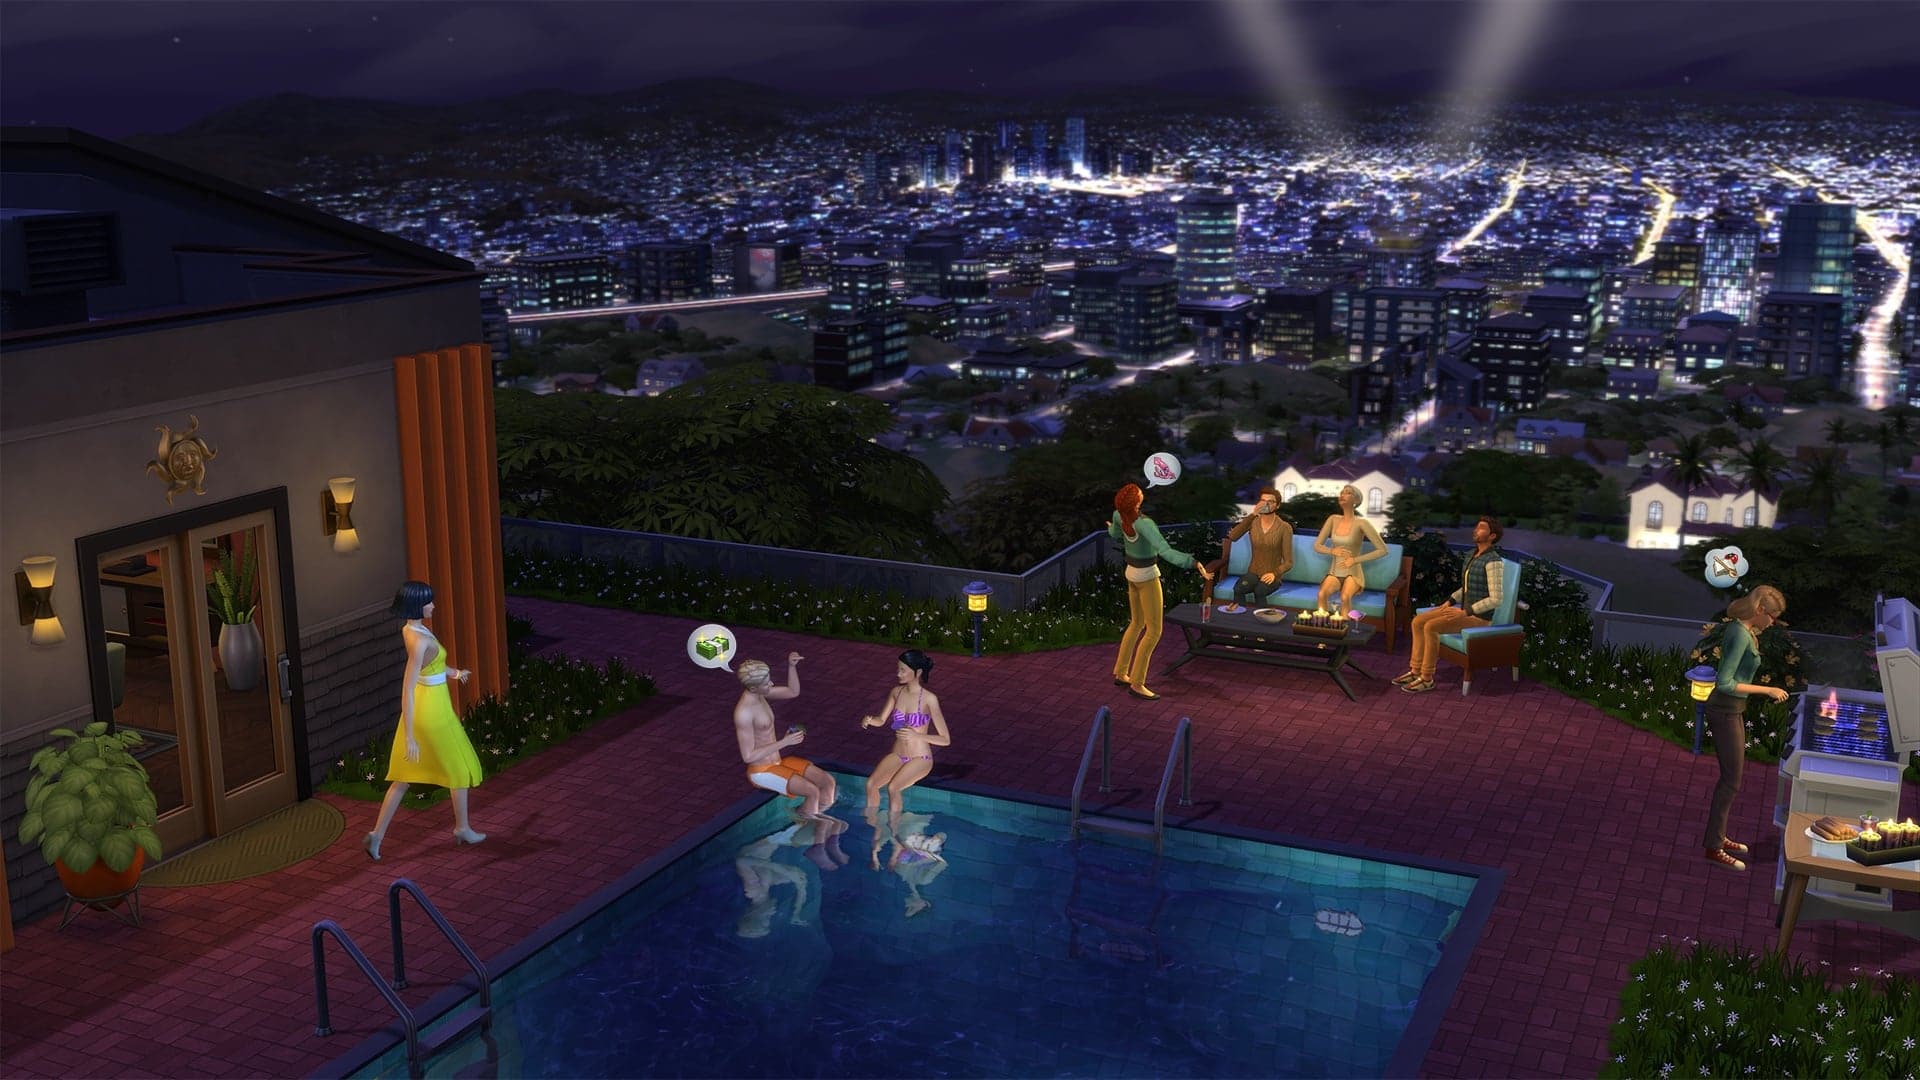 Soirée piscine avec amis, ville nocturne en fond.